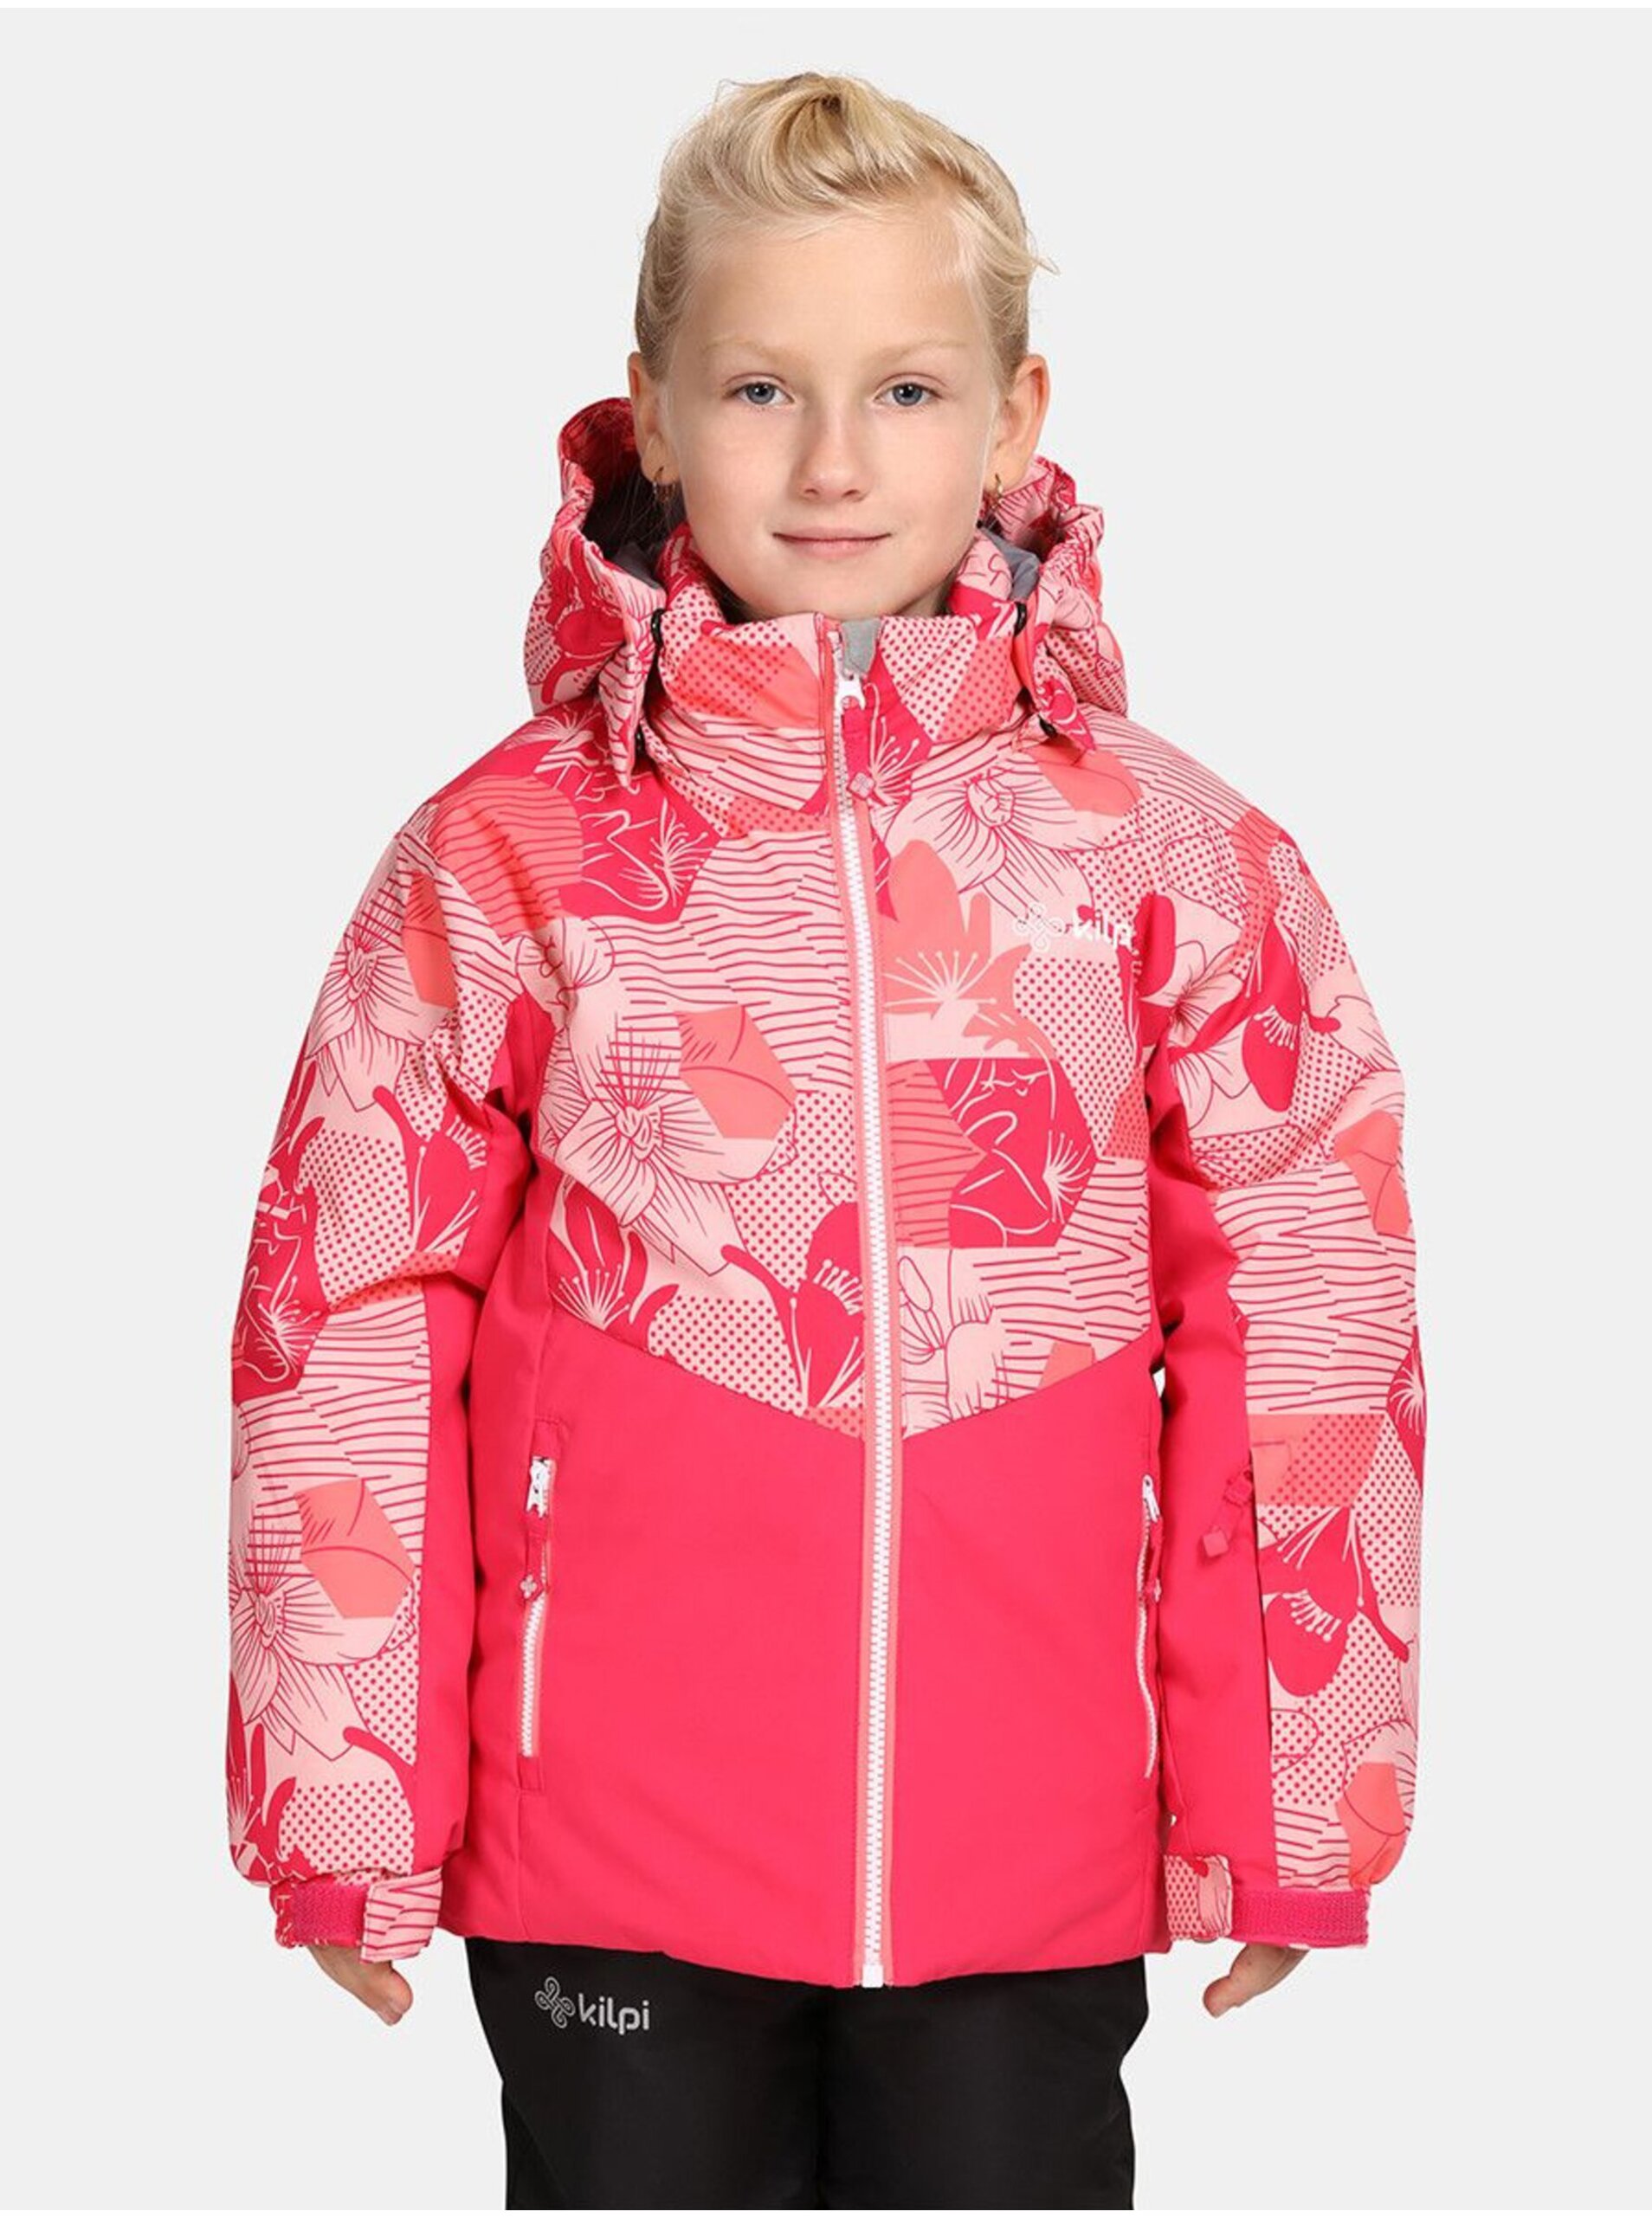 Lacno Tmavo ružová dievčenská lyžiarska bunda Kilpi Samara